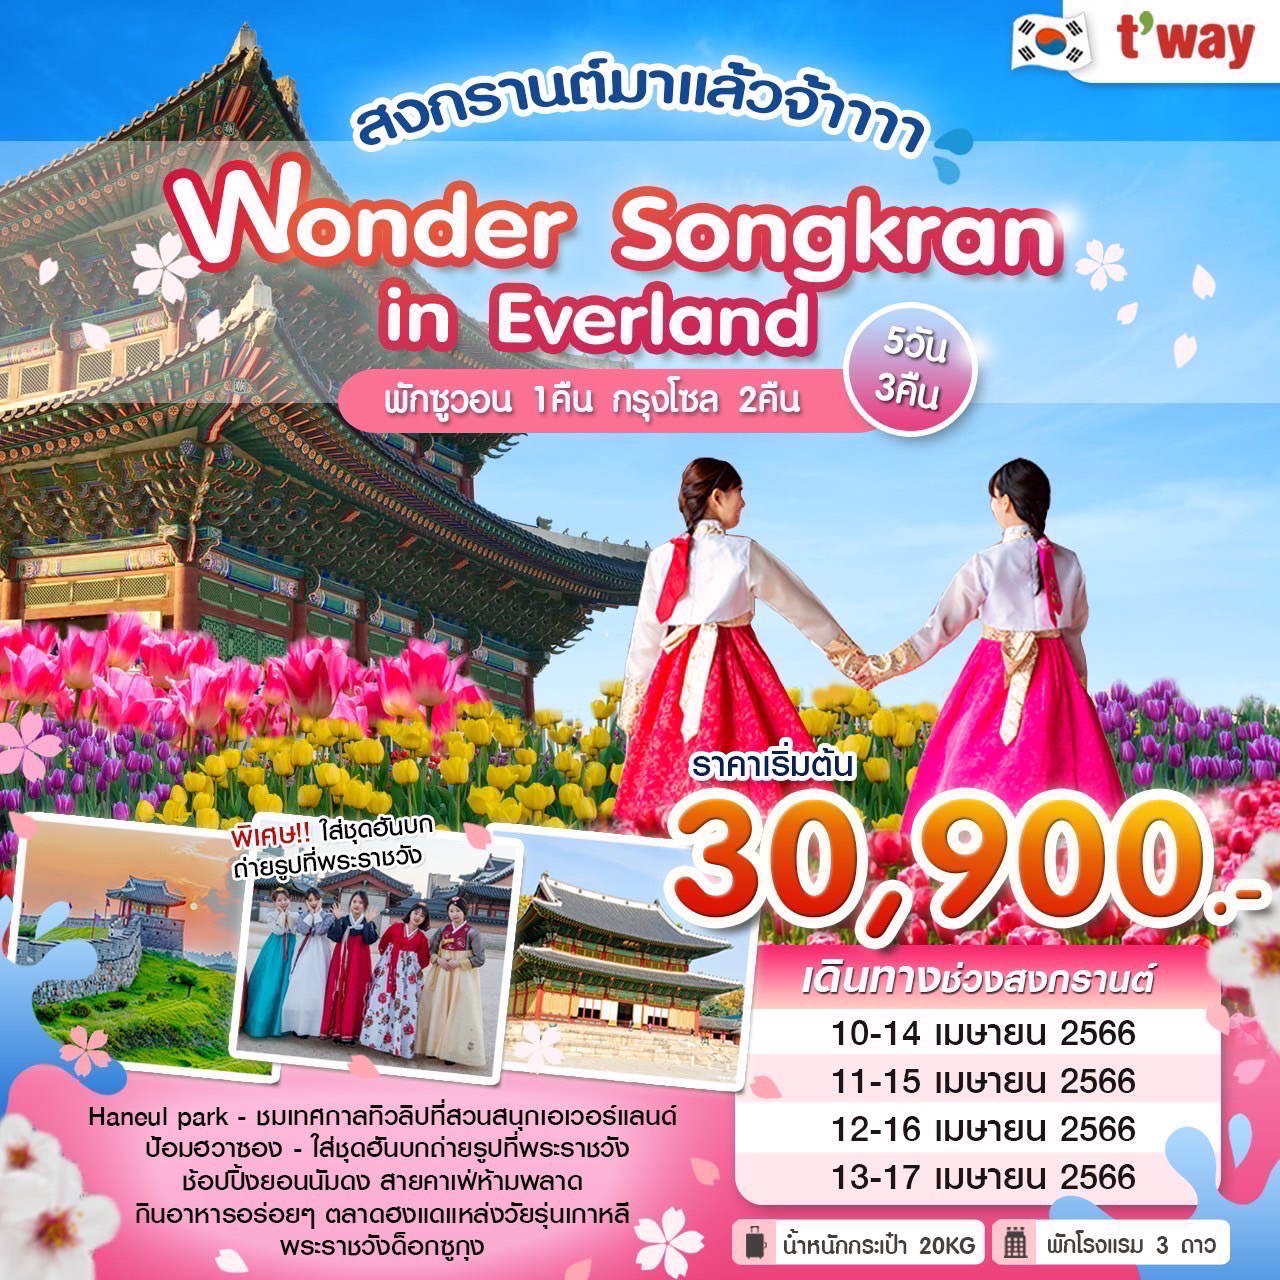 ทัวร์เกาหลีใต้ Wonder Songkran in Everland 5 วัน 3 คืน  (TW) เม.ย. 66